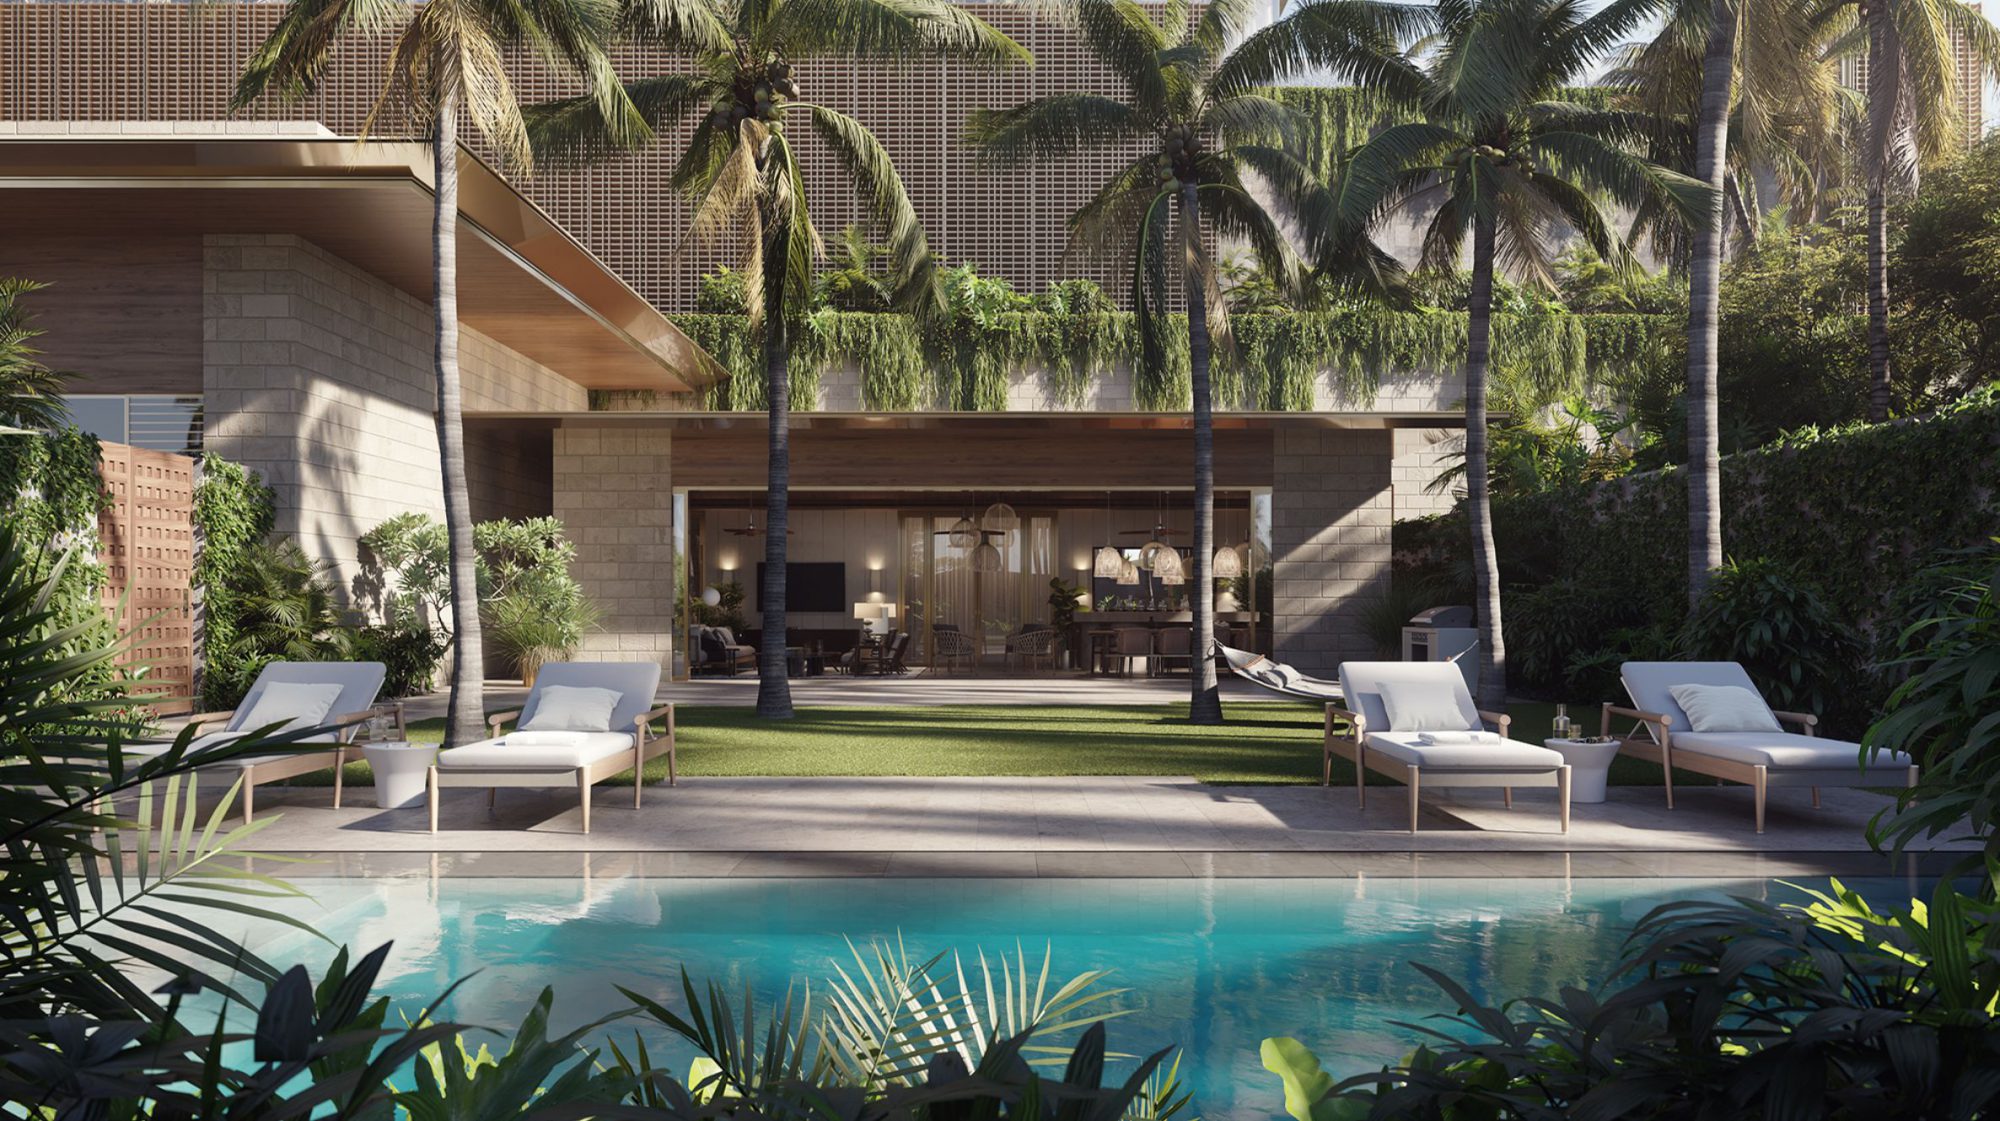 夏威夷风情泳池招待所之外，设有游泳池、池畔座位和室内外聚会空间